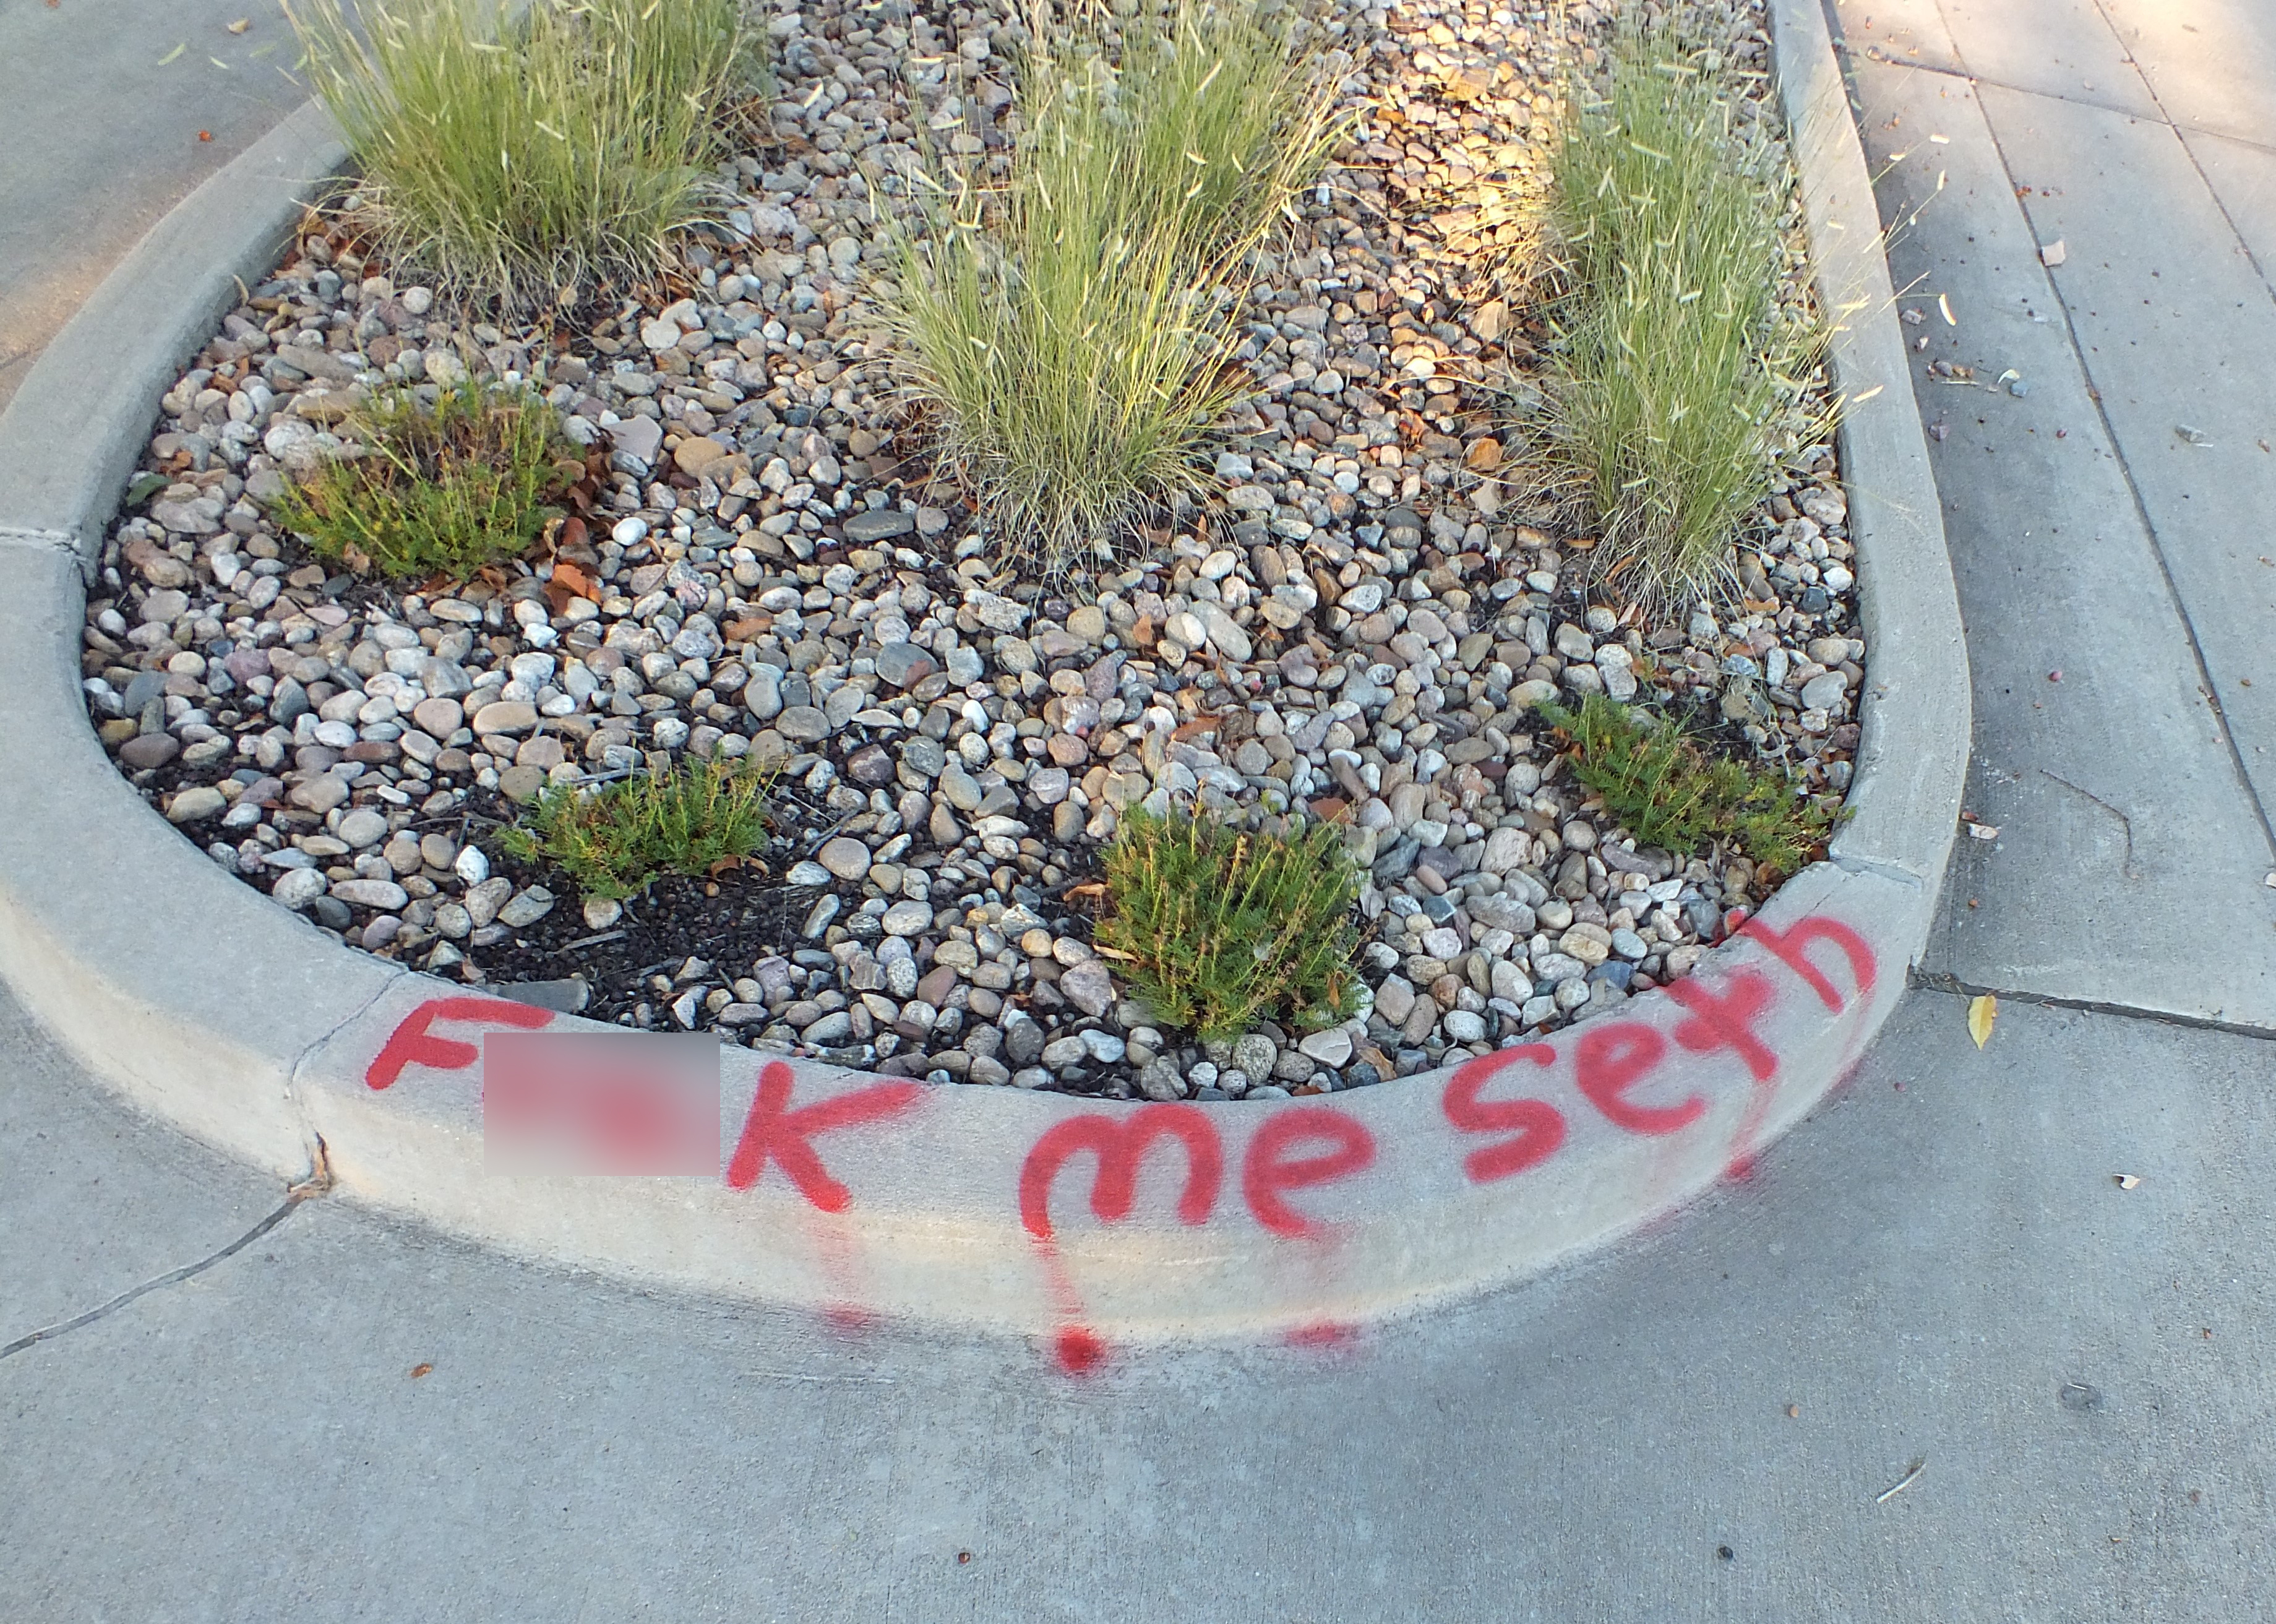 Image 4 : Graffiti rouge sur une bordure qui dit